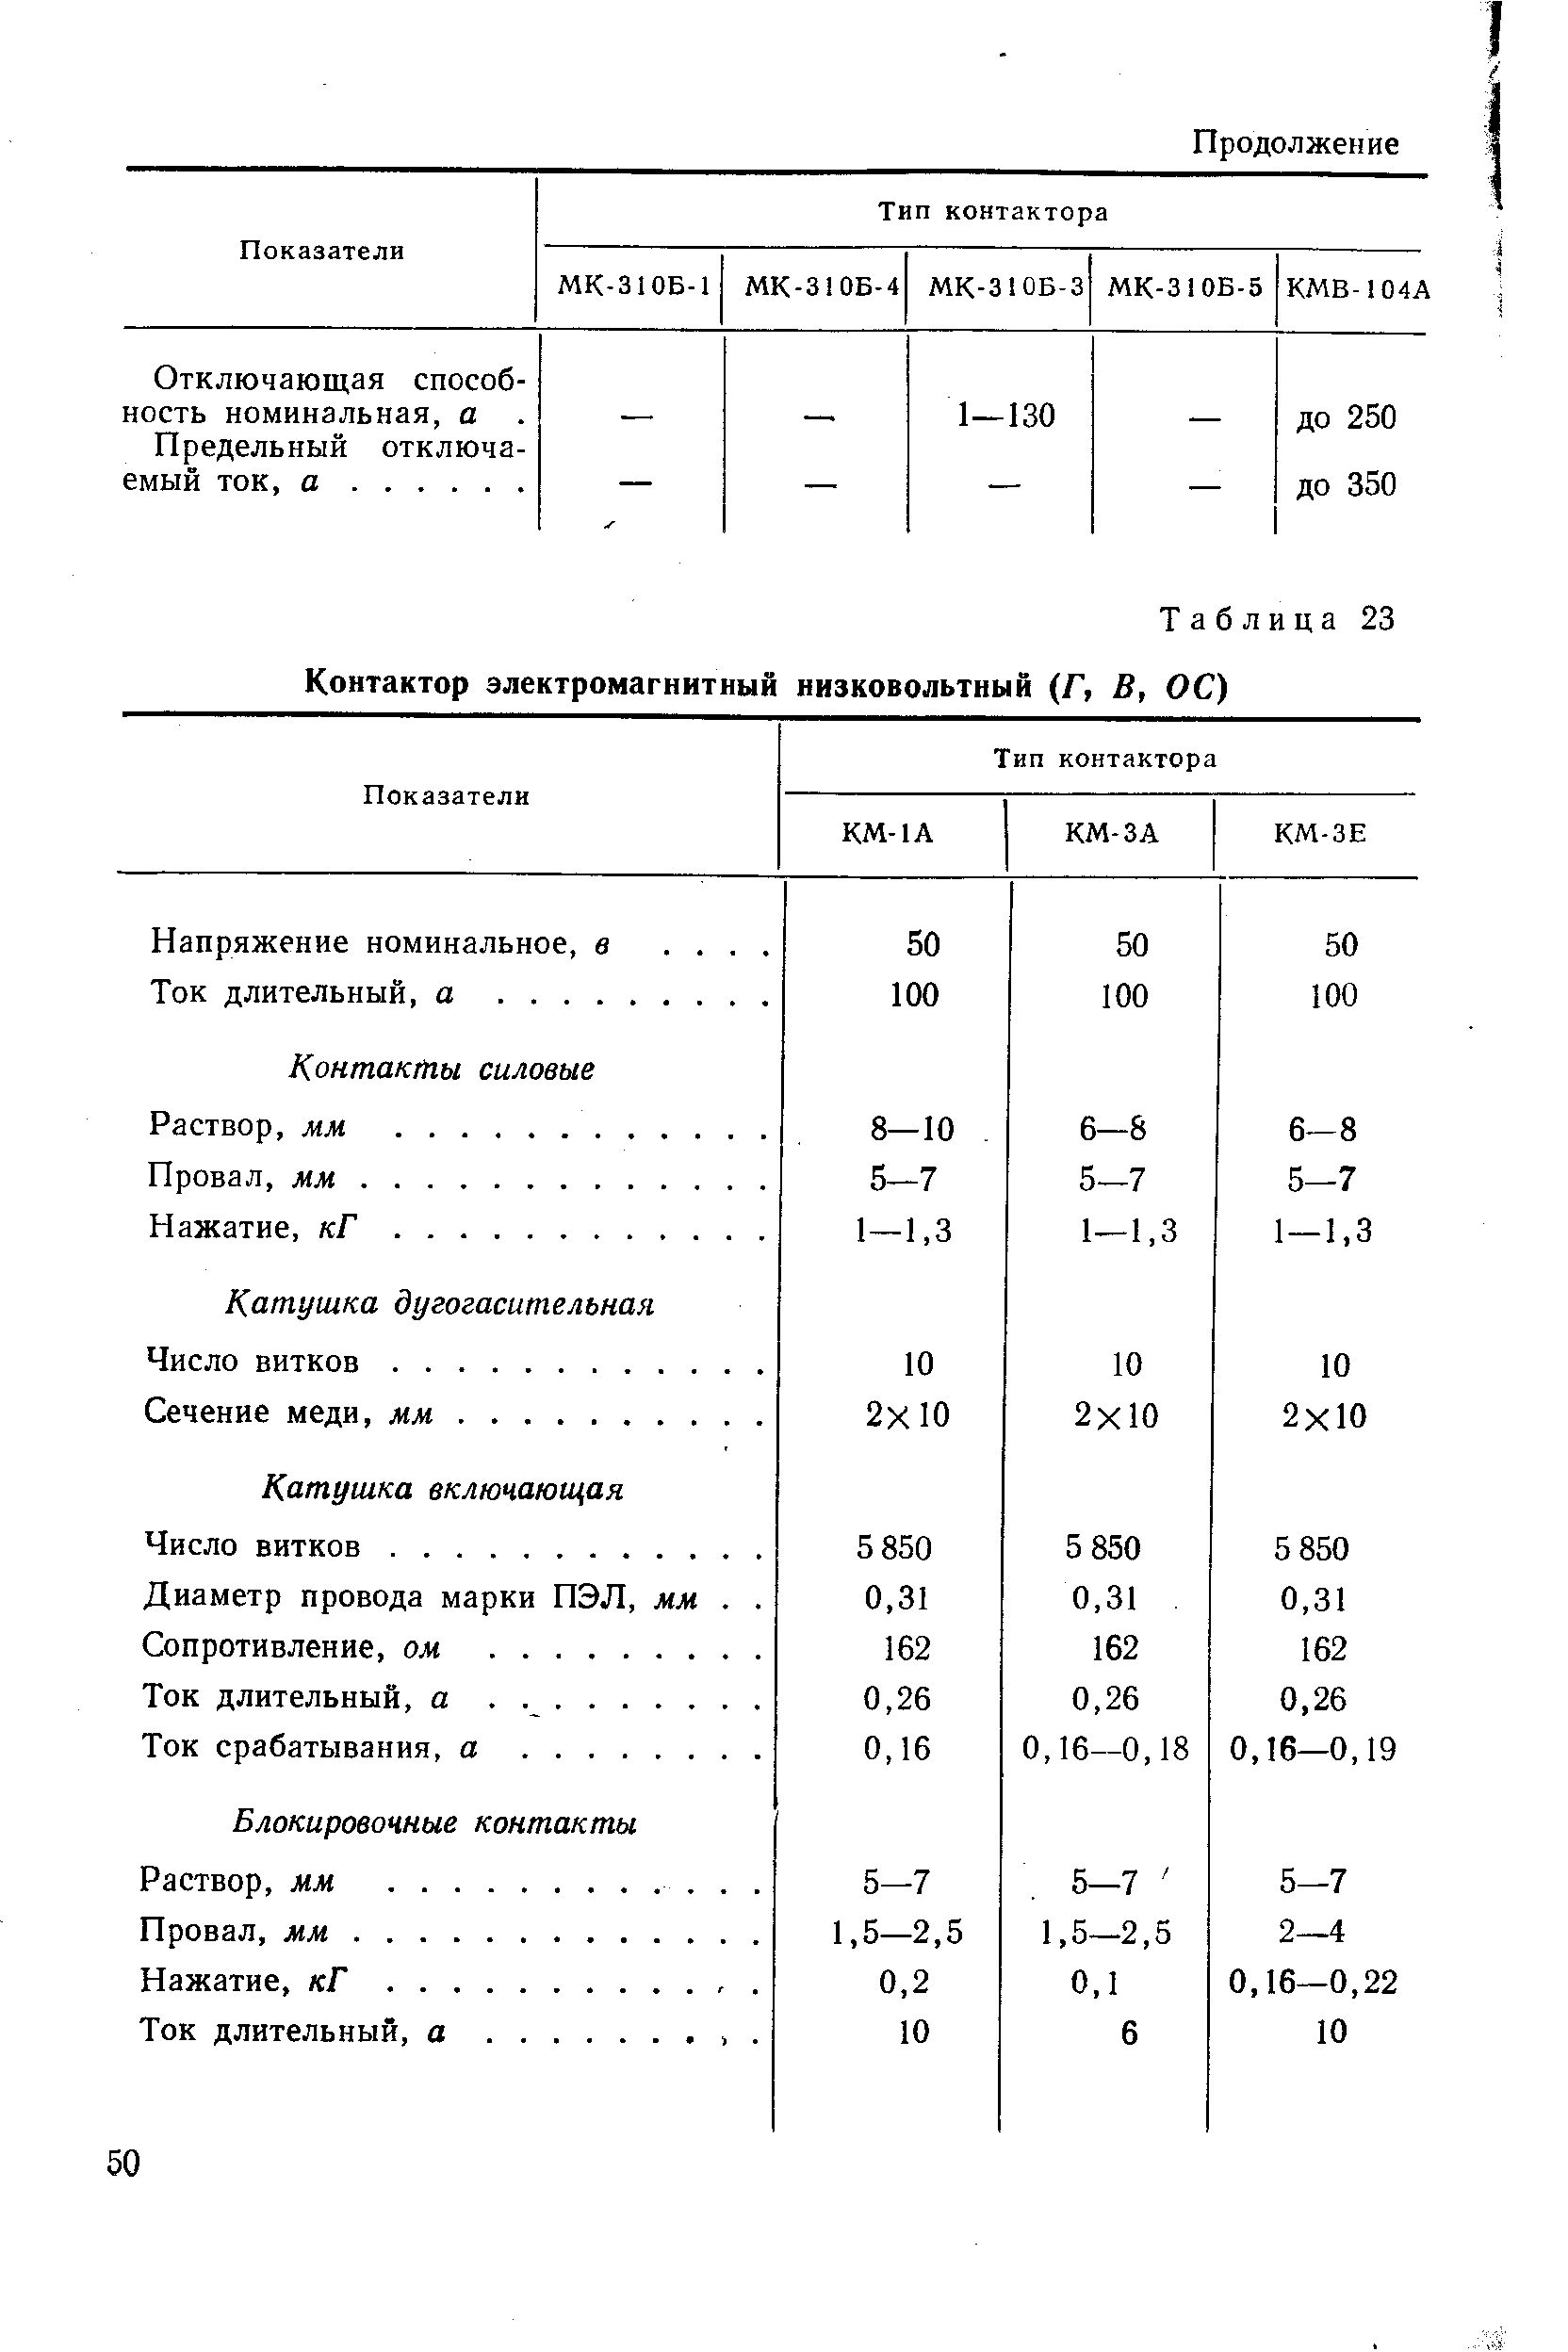 Таблица 23 Контактор электромагнитный низковольтный (Г, В, ОС)
